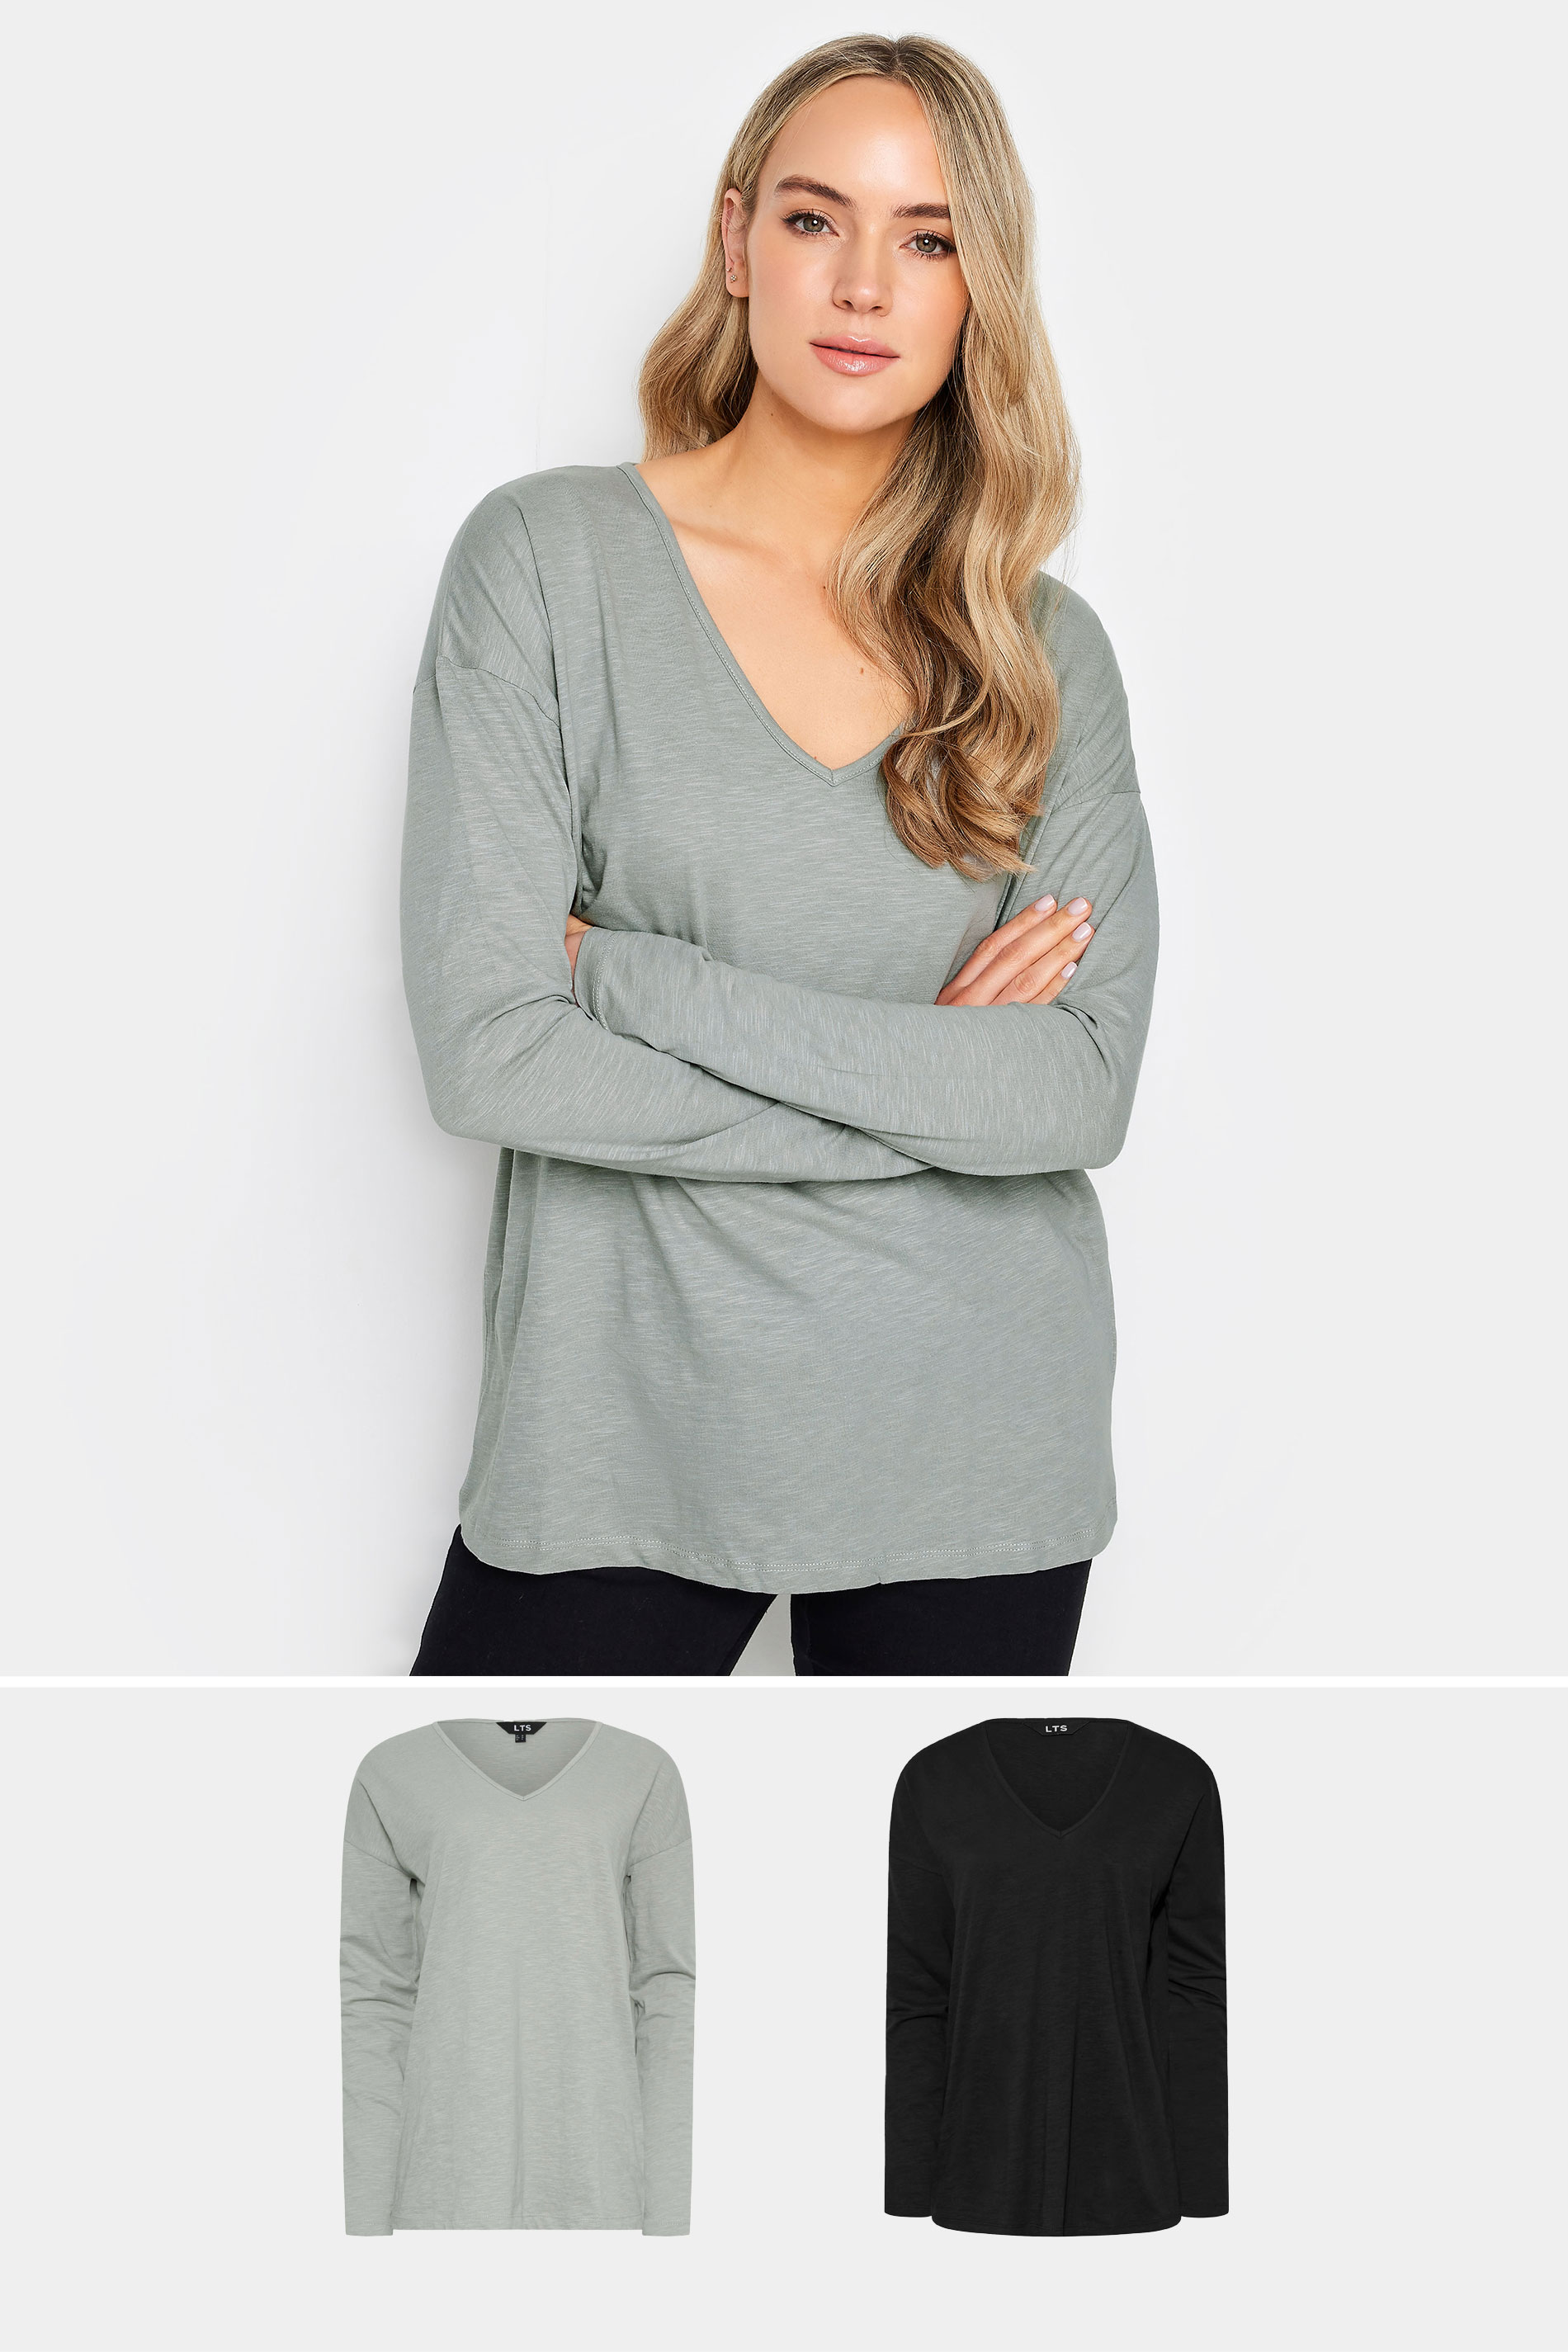 LTS Tall Light Grey & Black V-Neck Long Sleeve Cotton T-Shirt | Long Tall Sally 1